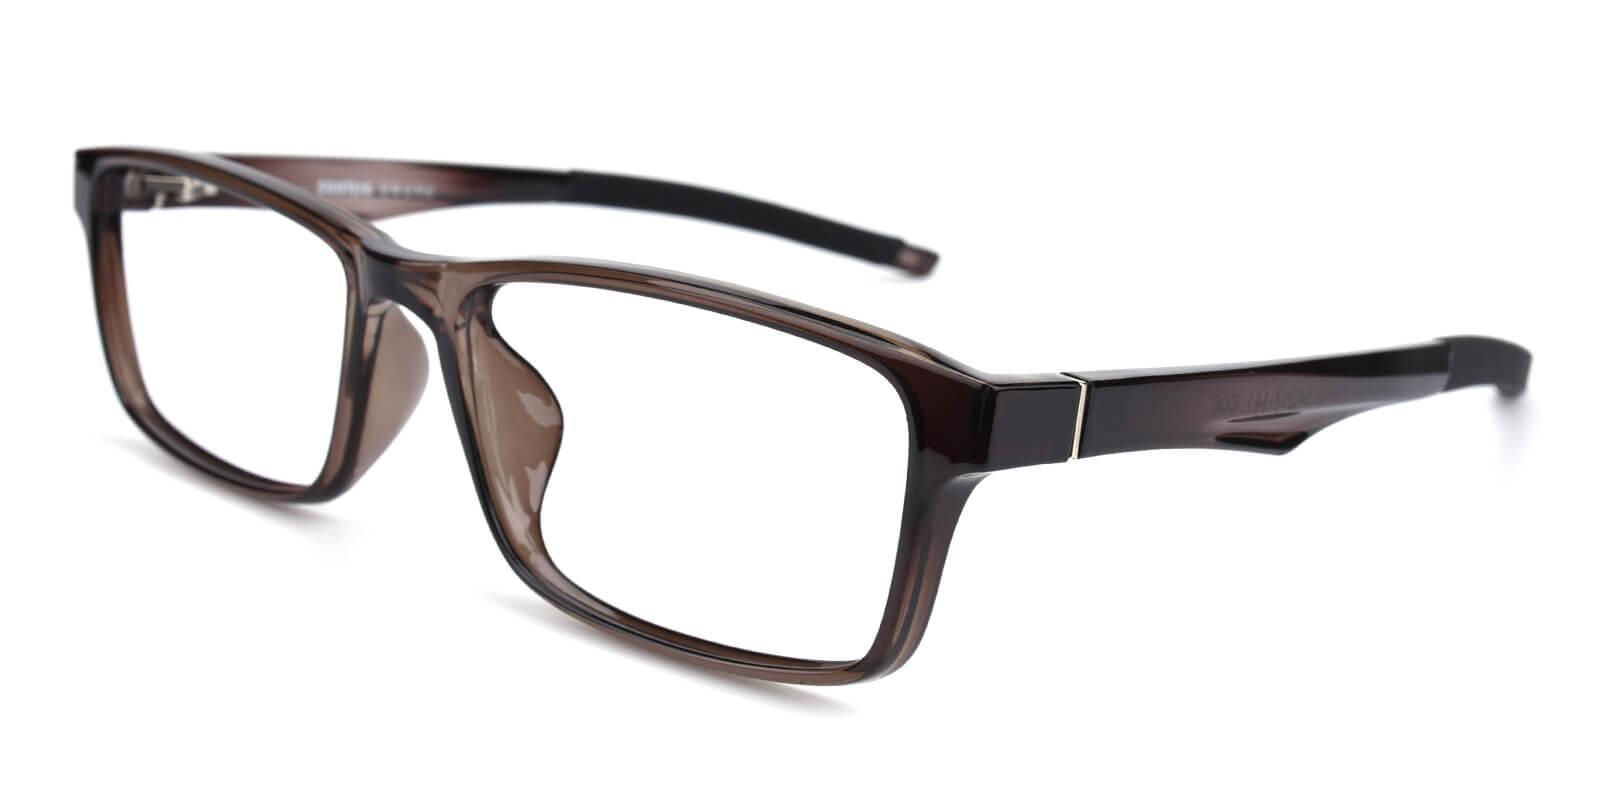 Arctic Gray TR Eyeglasses , SportsGlasses , UniversalBridgeFit Frames from ABBE Glasses